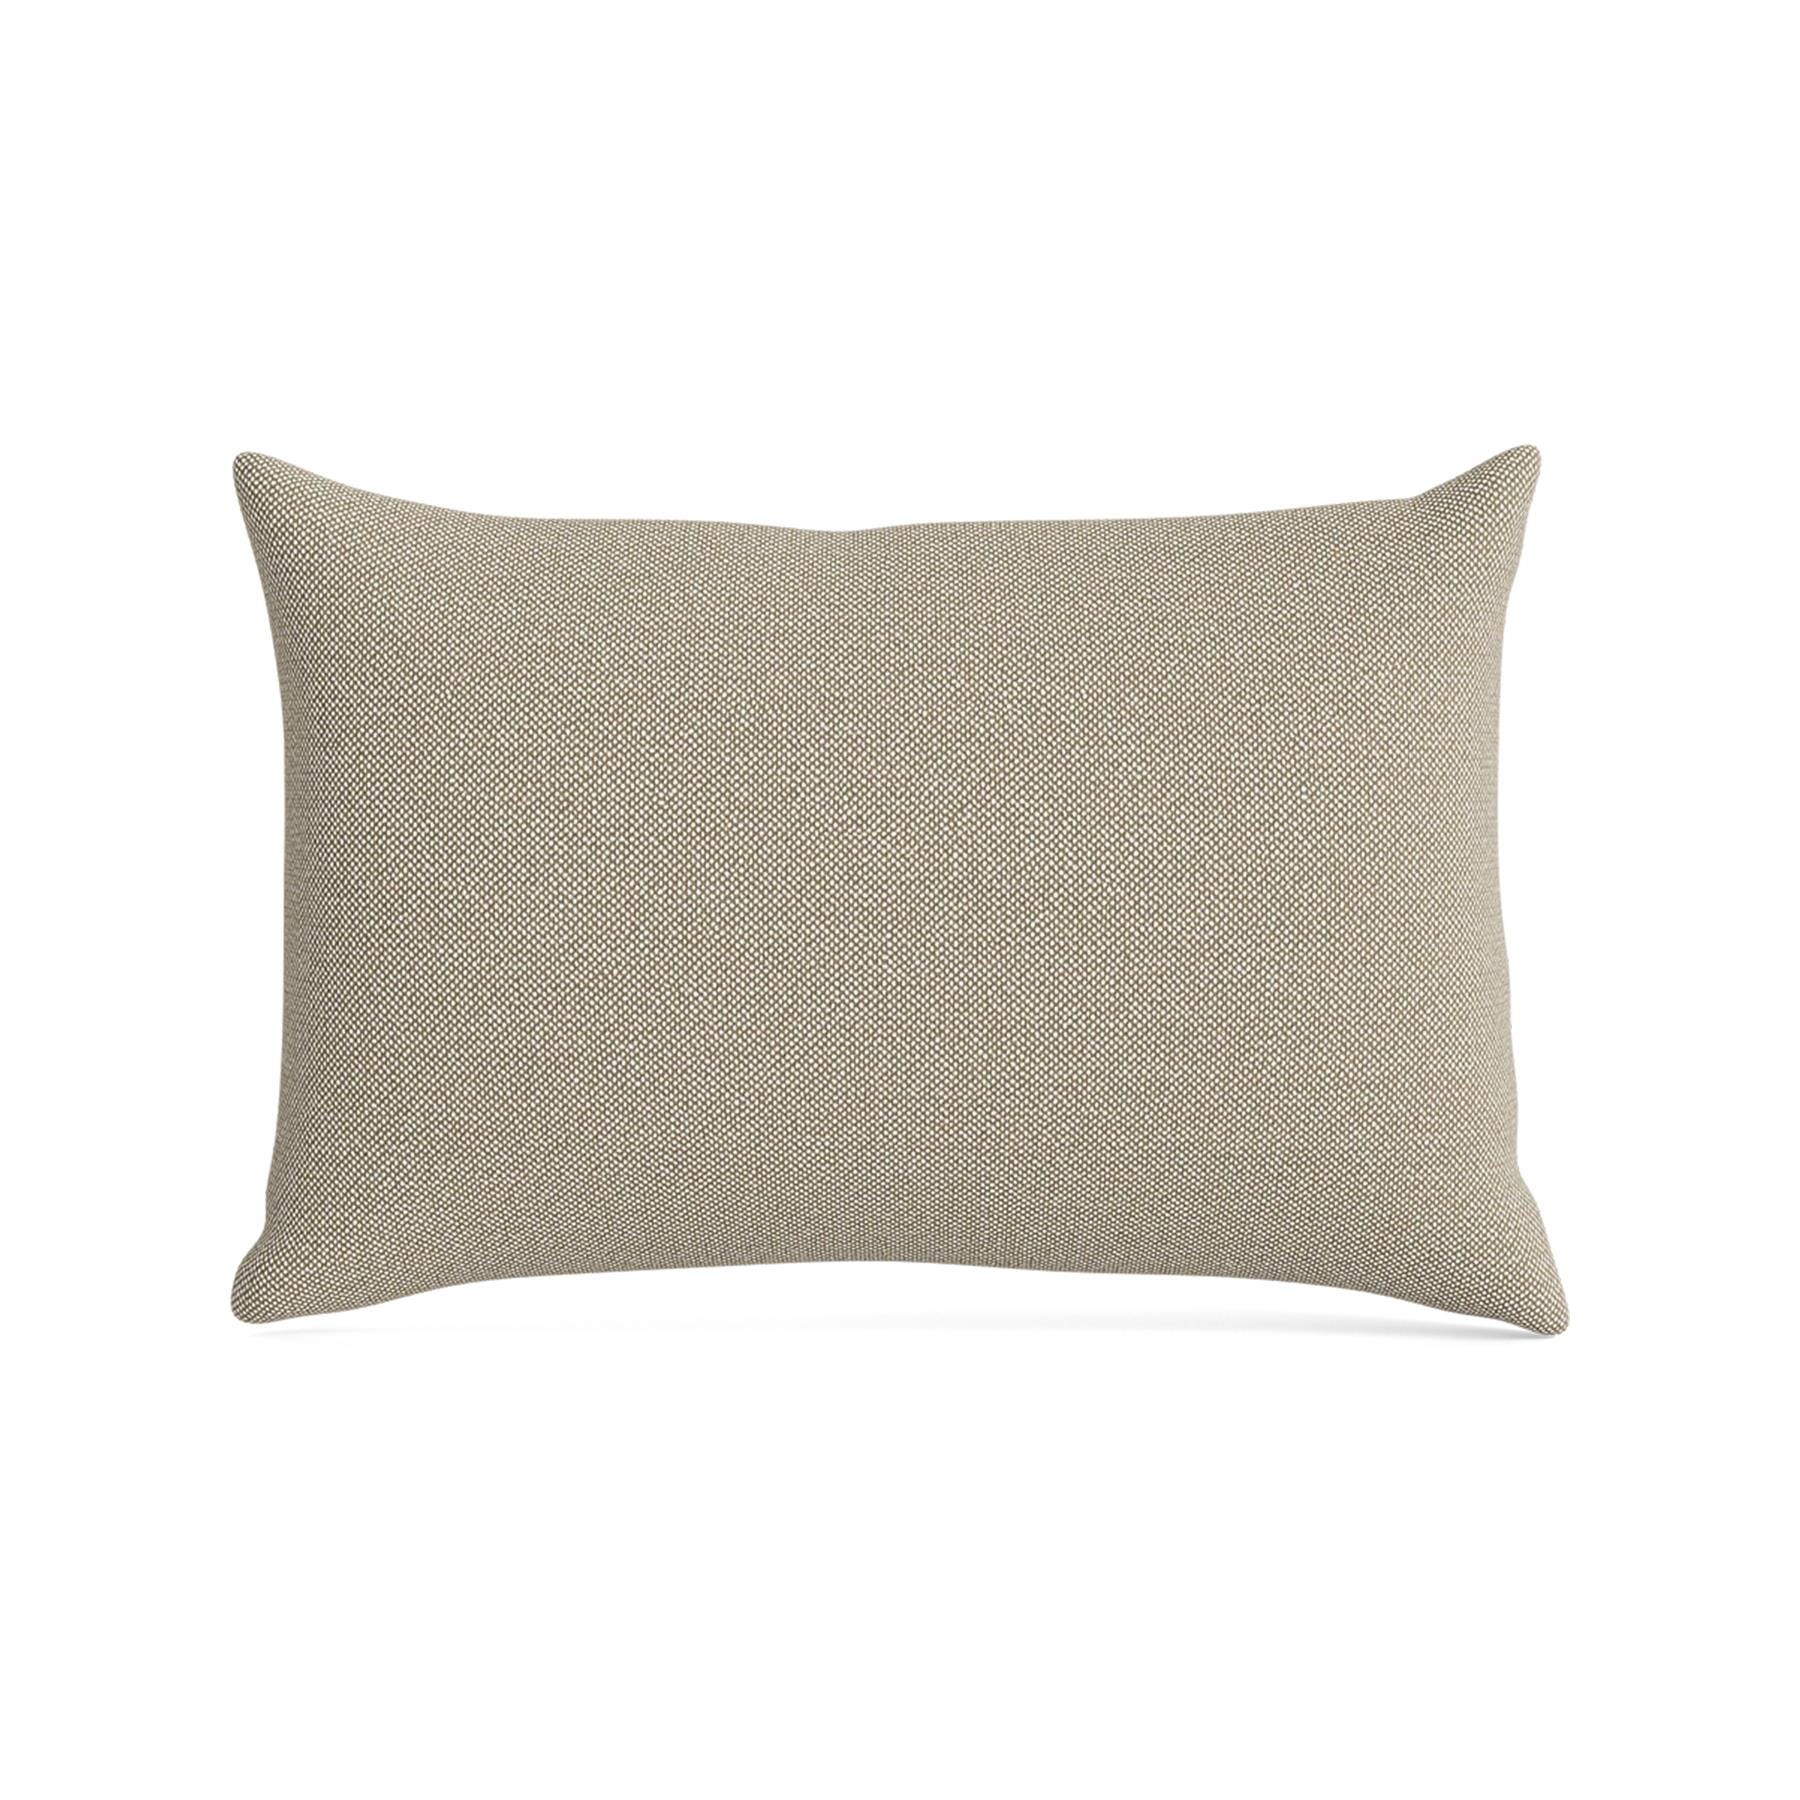 Make Nordic Pillow 40cmx60cm Hallingdal 220 Down And Fibers Brown